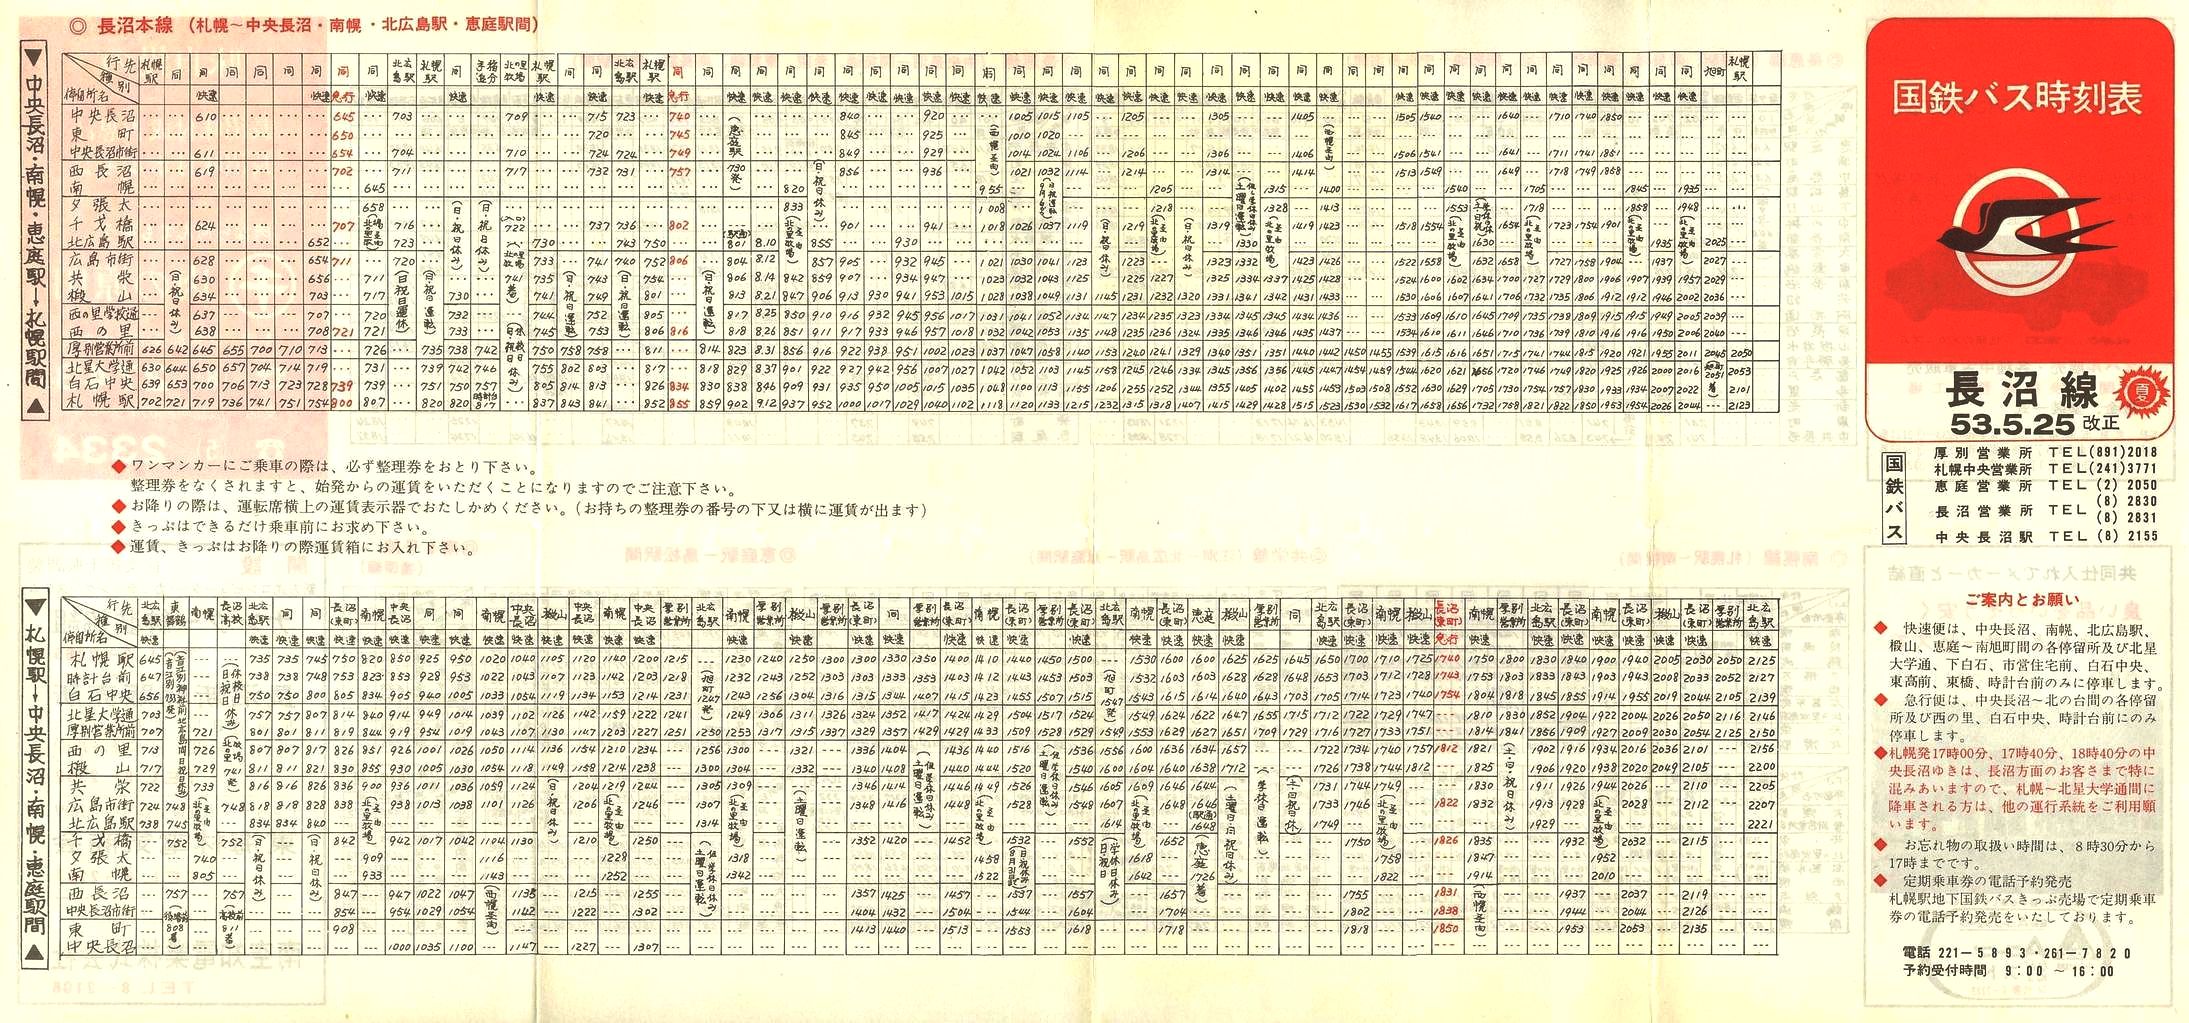 1978-05-25改正_国鉄バス_長沼線時刻表表面